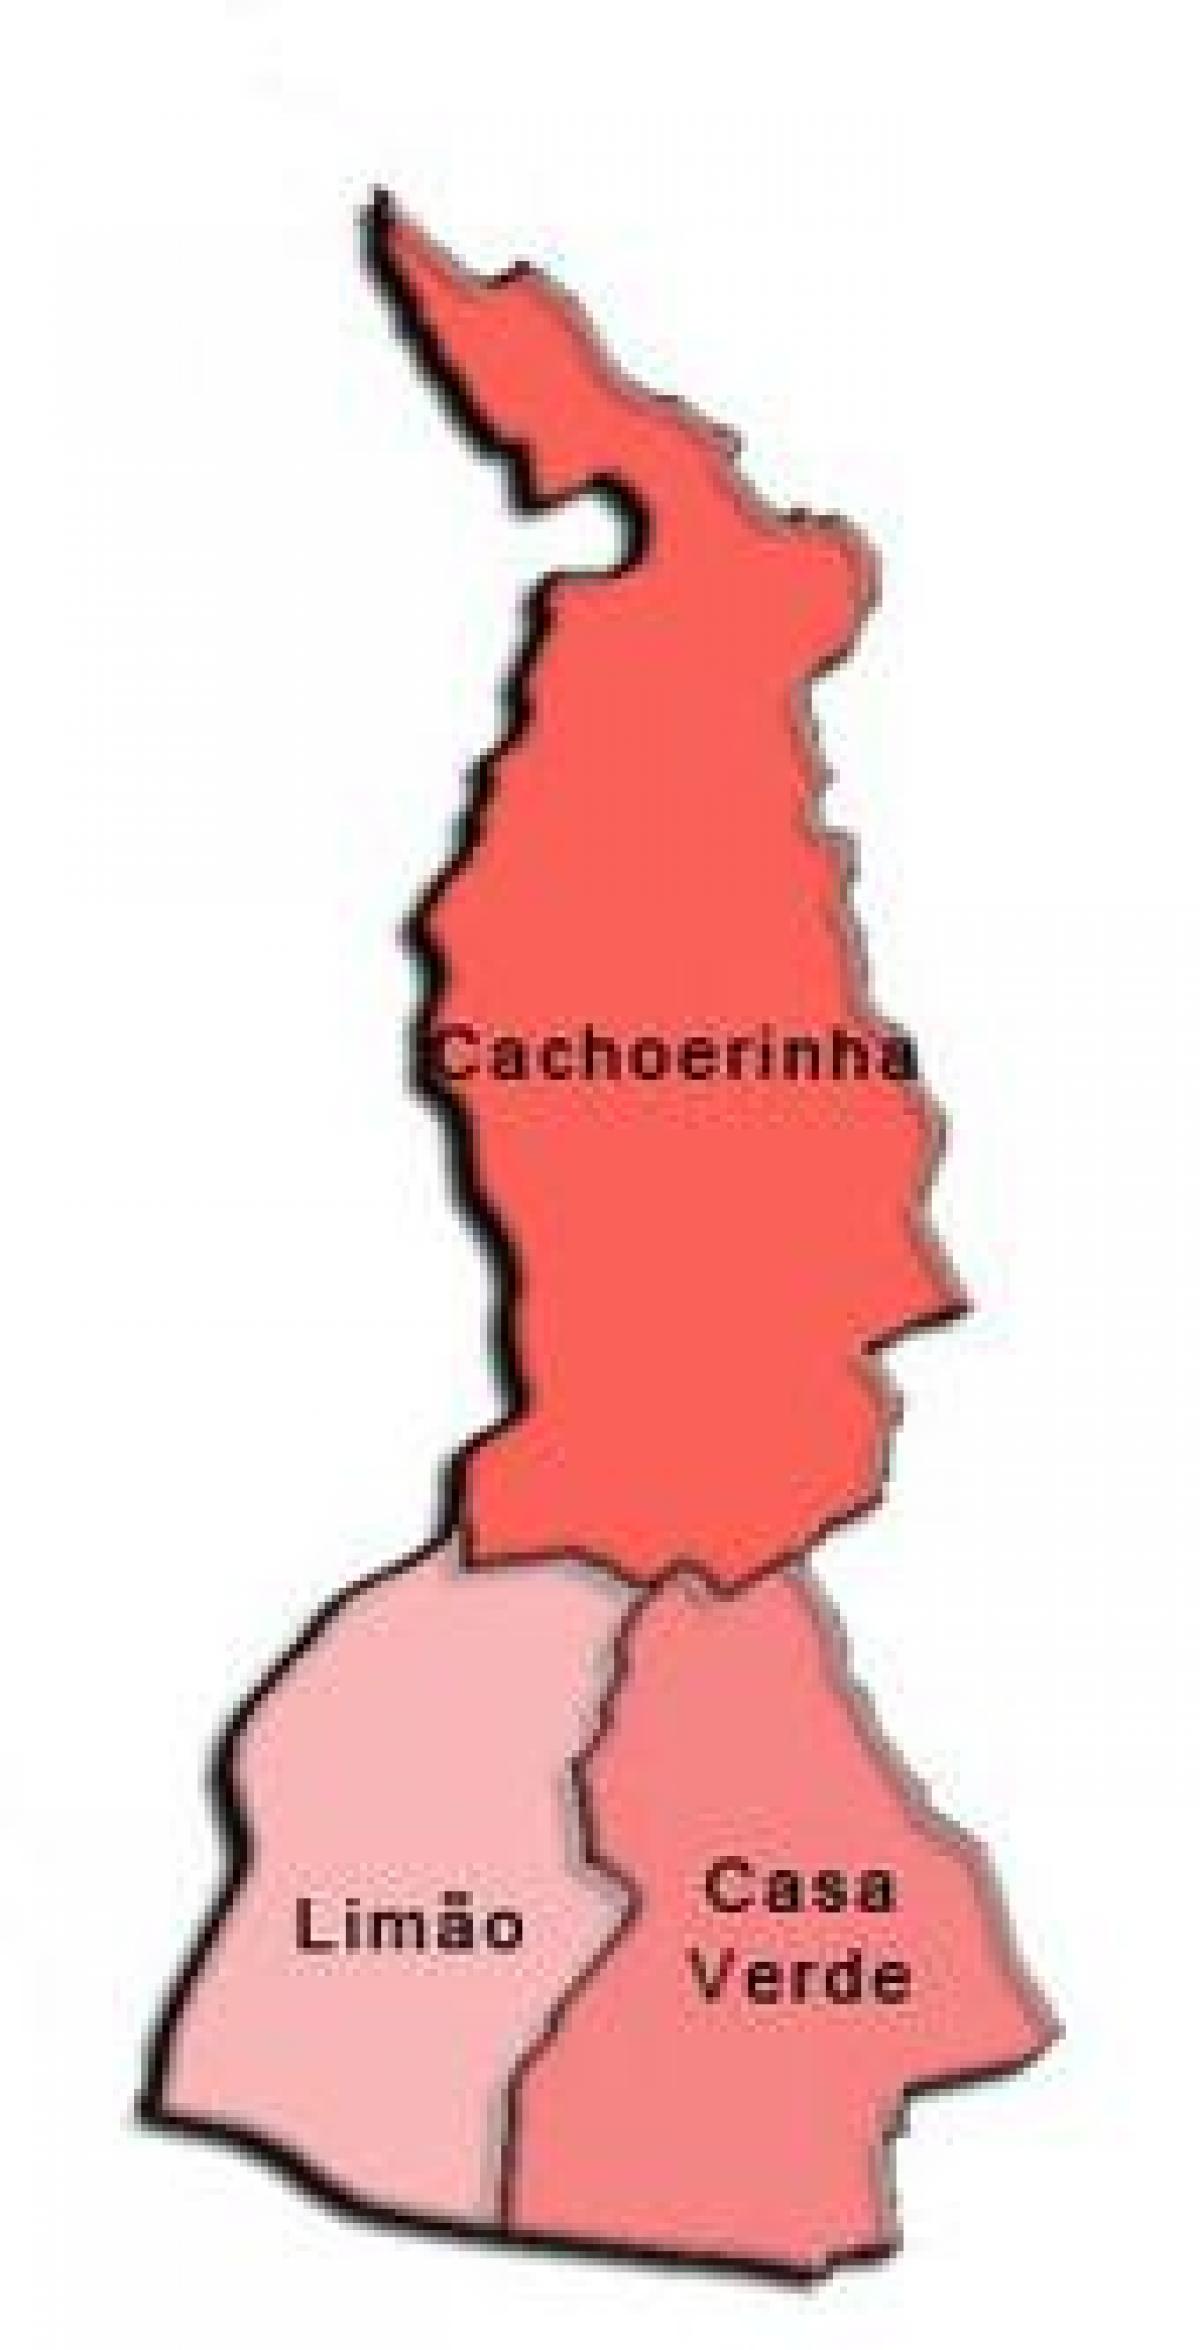 Kort over Casa Verde sub-præfekturet